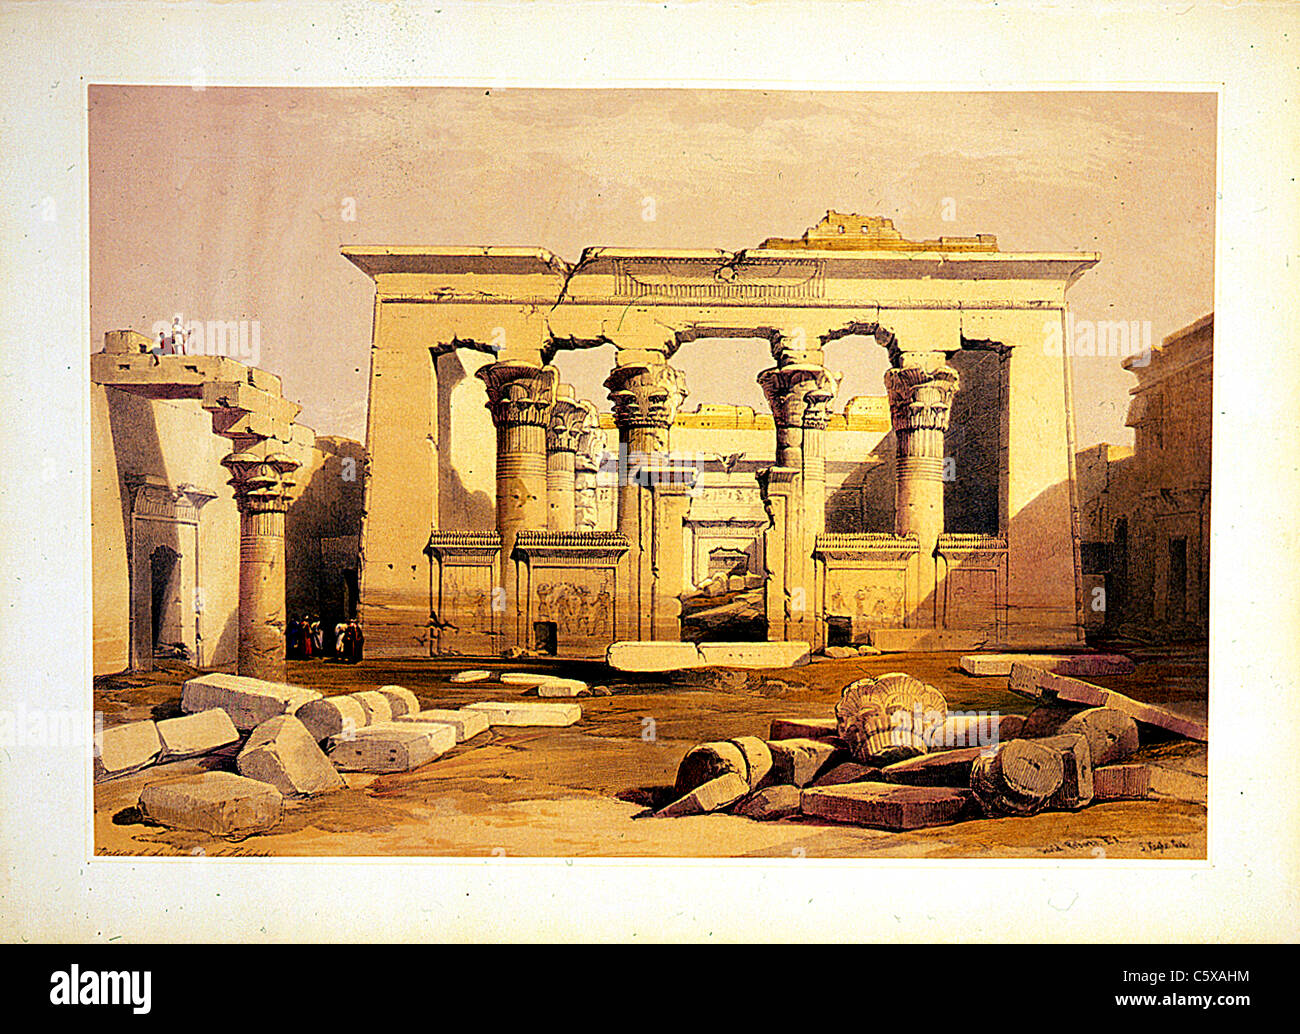 Portique du temple de Kalabshe, gravure de Louis Haghe / David Roberts peinture de la Terre Sainte, Syrie, Idumea, Arabie, Egypte et Nubie Banque D'Images